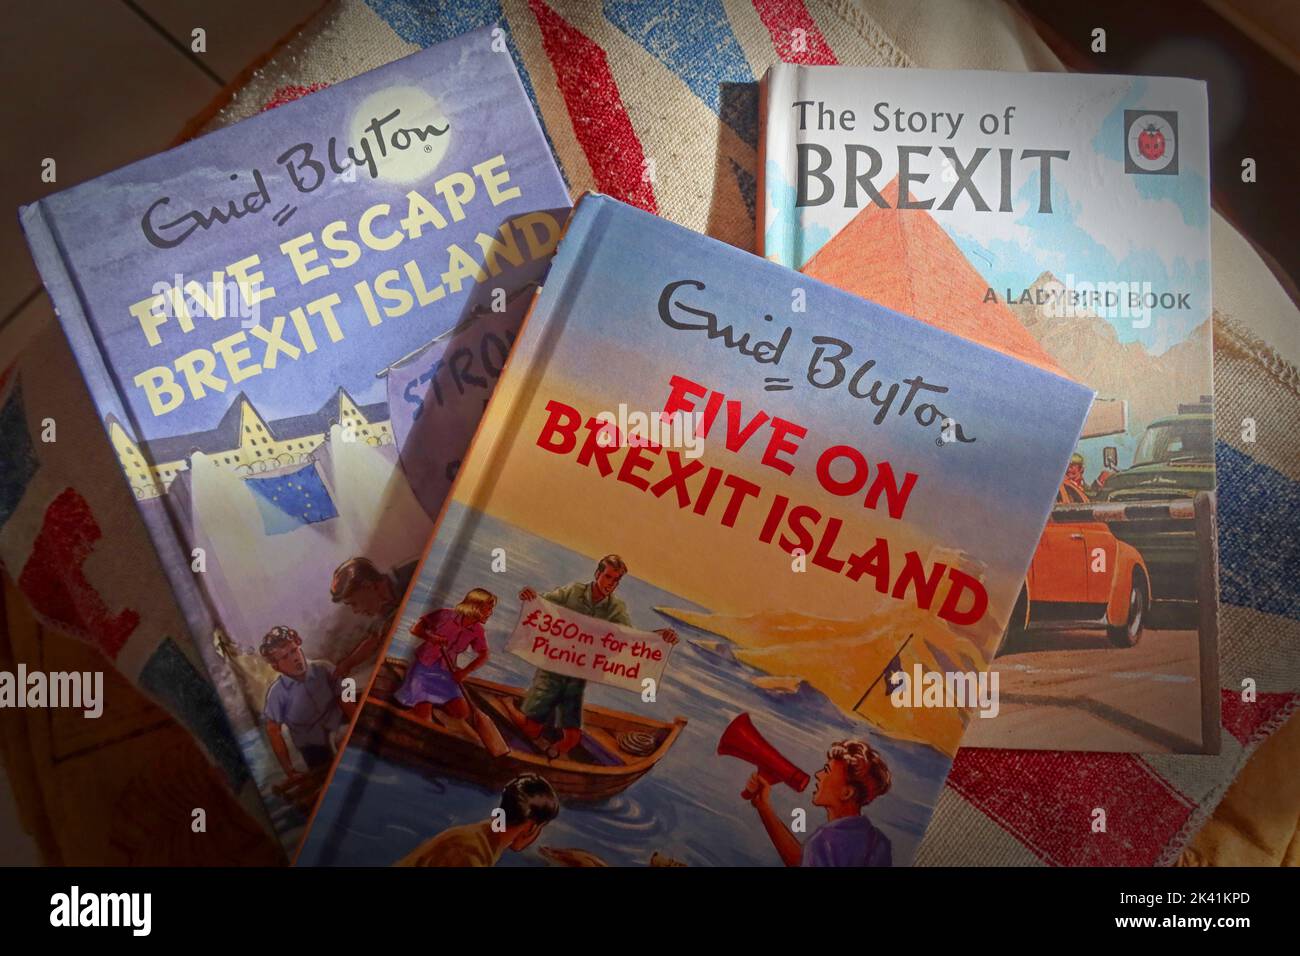 Ouvrages de Bexit, Five Escape Brexit Island, The Story of Brexit, livre de ladybird Banque D'Images